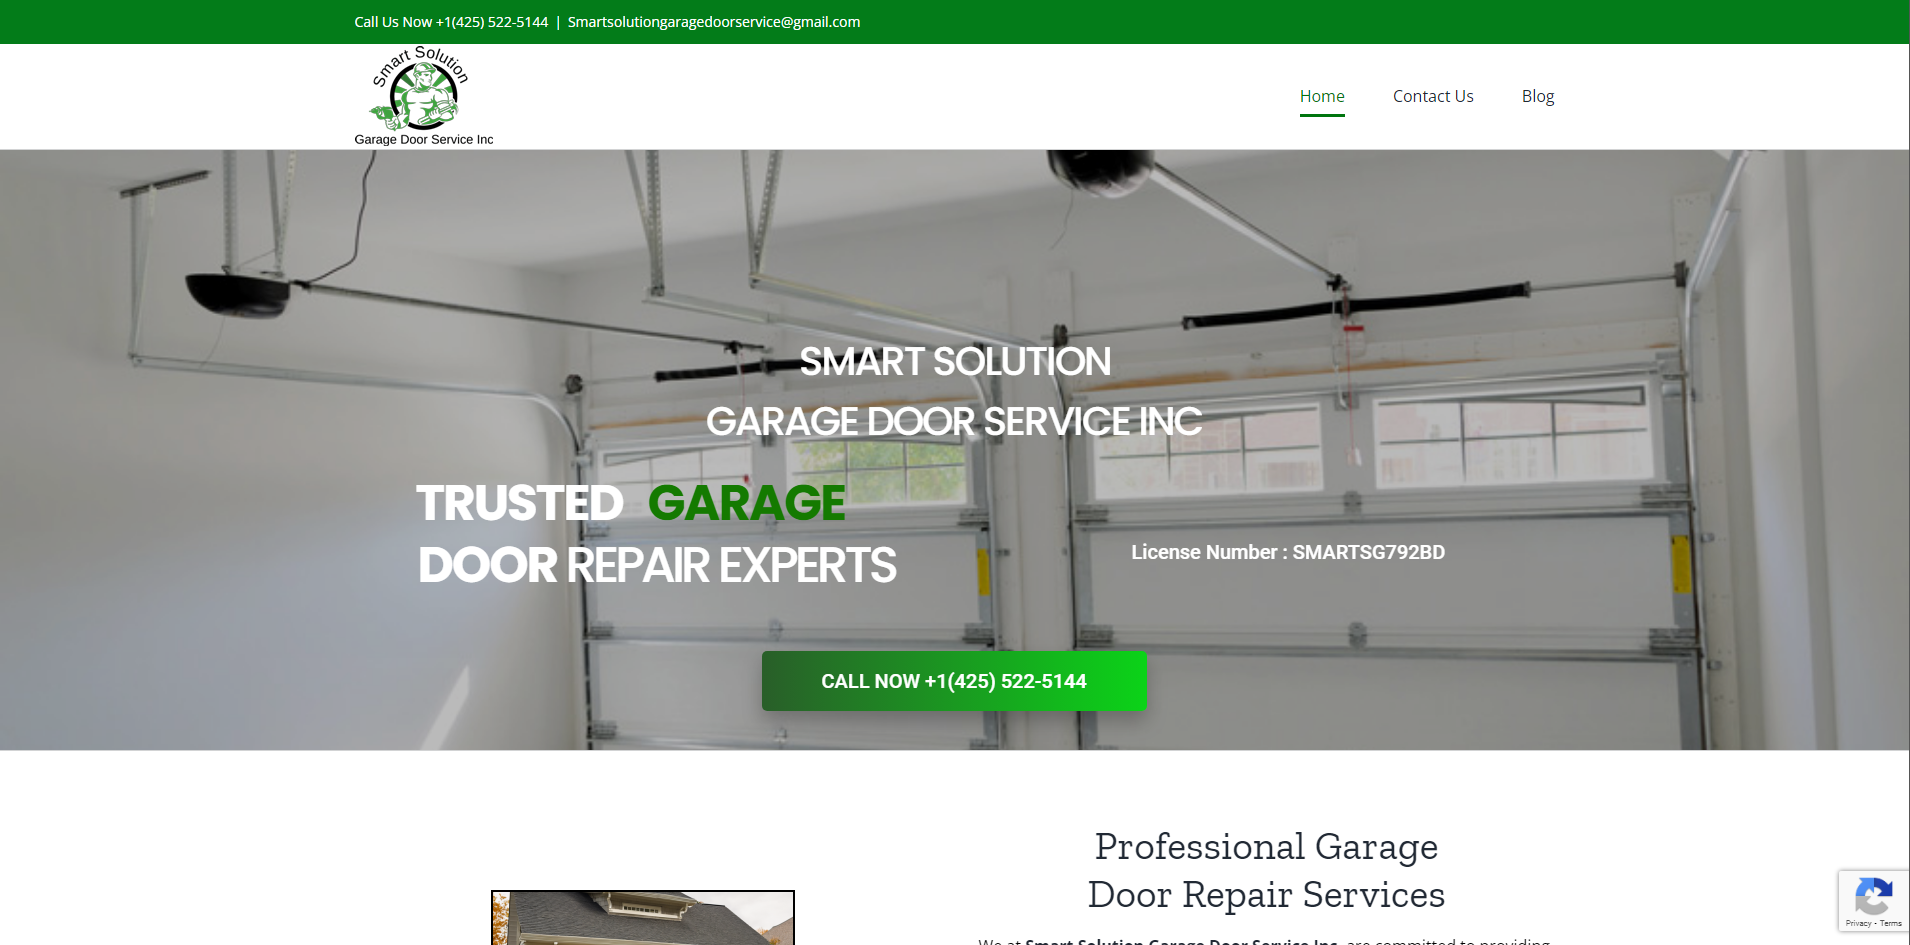 Smart Solution Garage Door Service Inc